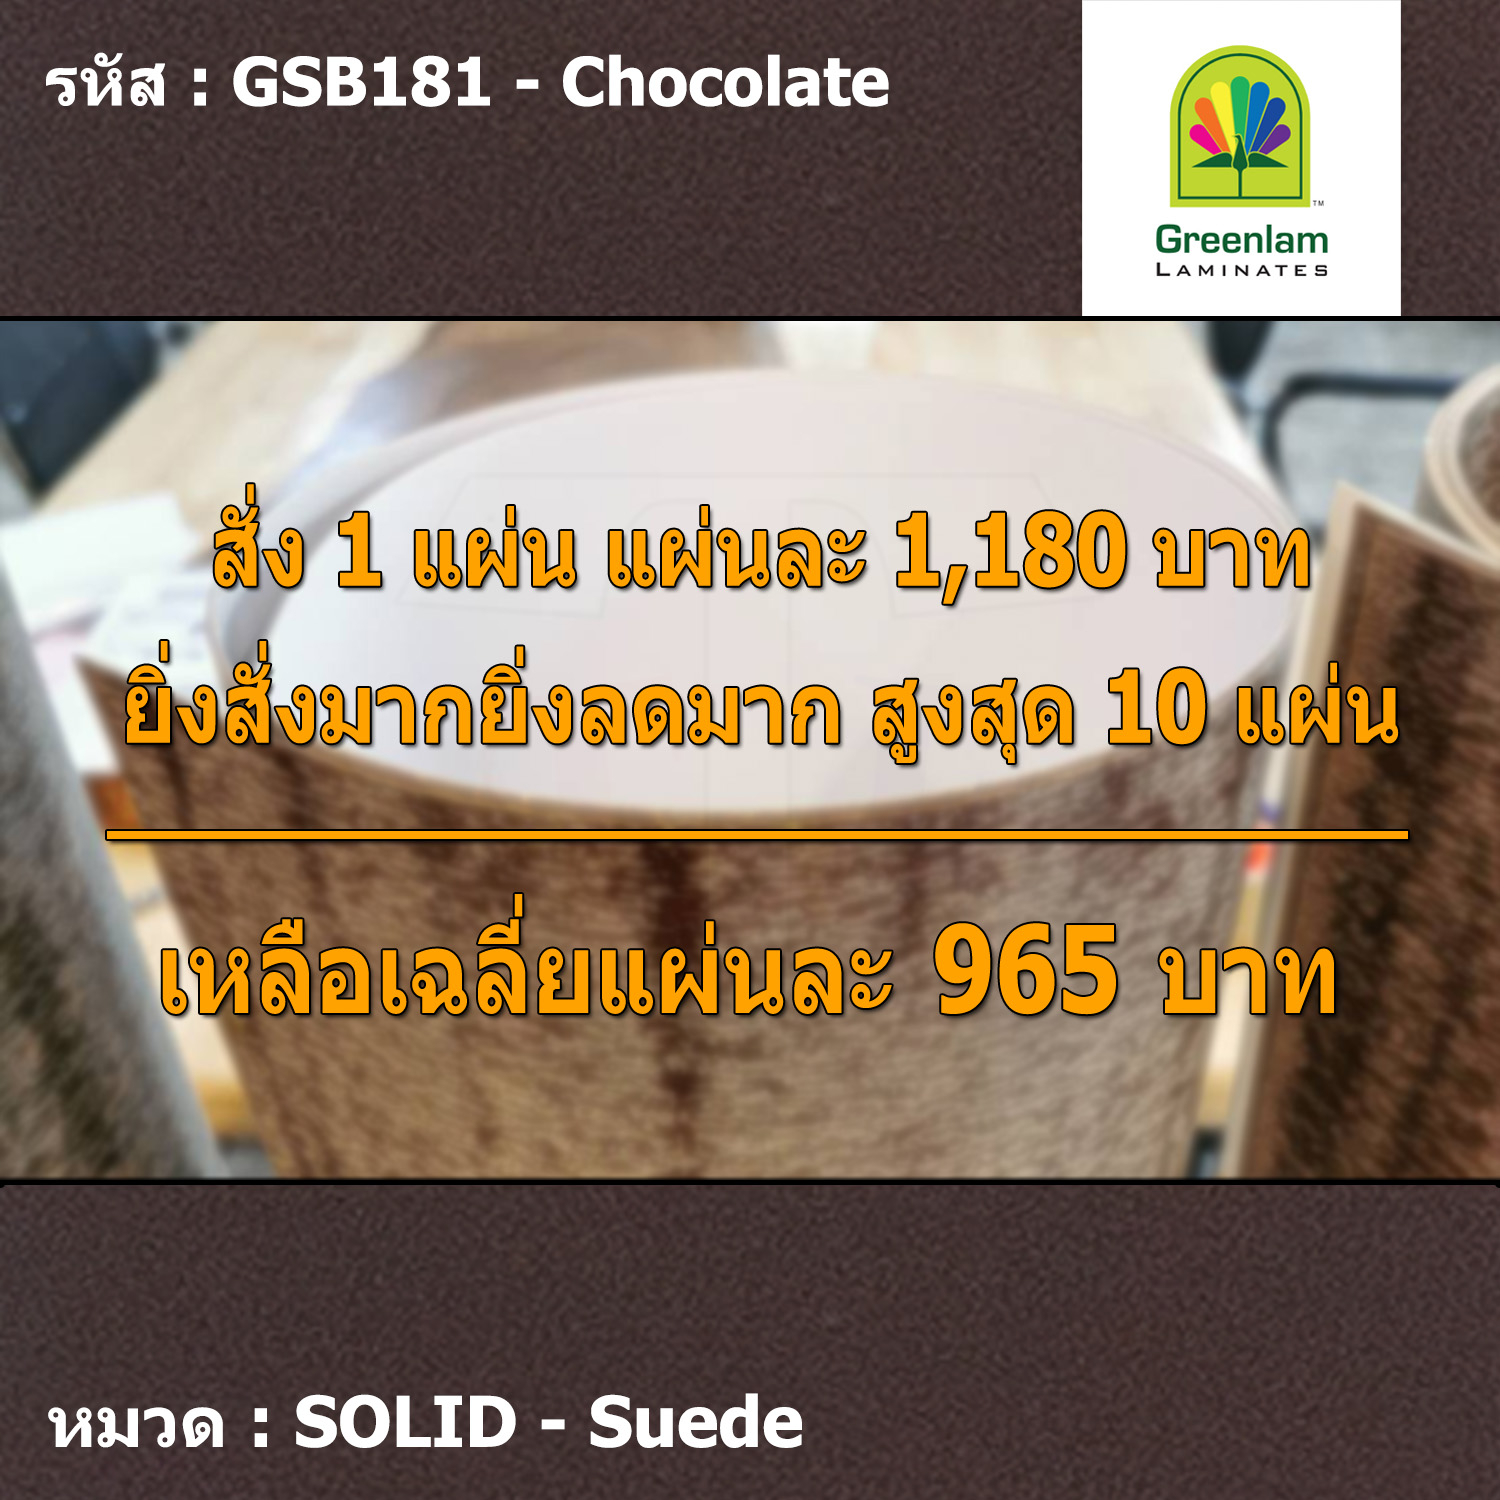 แผ่นโฟเมก้า แผ่นลามิเนต ยี่ห้อ Greenlam สีน้ำตาลเข้ม รหัส GSB181 Chocolate พื้นผิวลาย Suede ขนาด 1220 x 2440 มม. หนา 0.80 มม. ใช้สำหรับงานตกแต่งภายใน งานปิดผิวเฟอร์นิเจอร์ ผนัง และอื่นๆ เพื่อเพิ่มความสวยงาม formica laminate GSB181